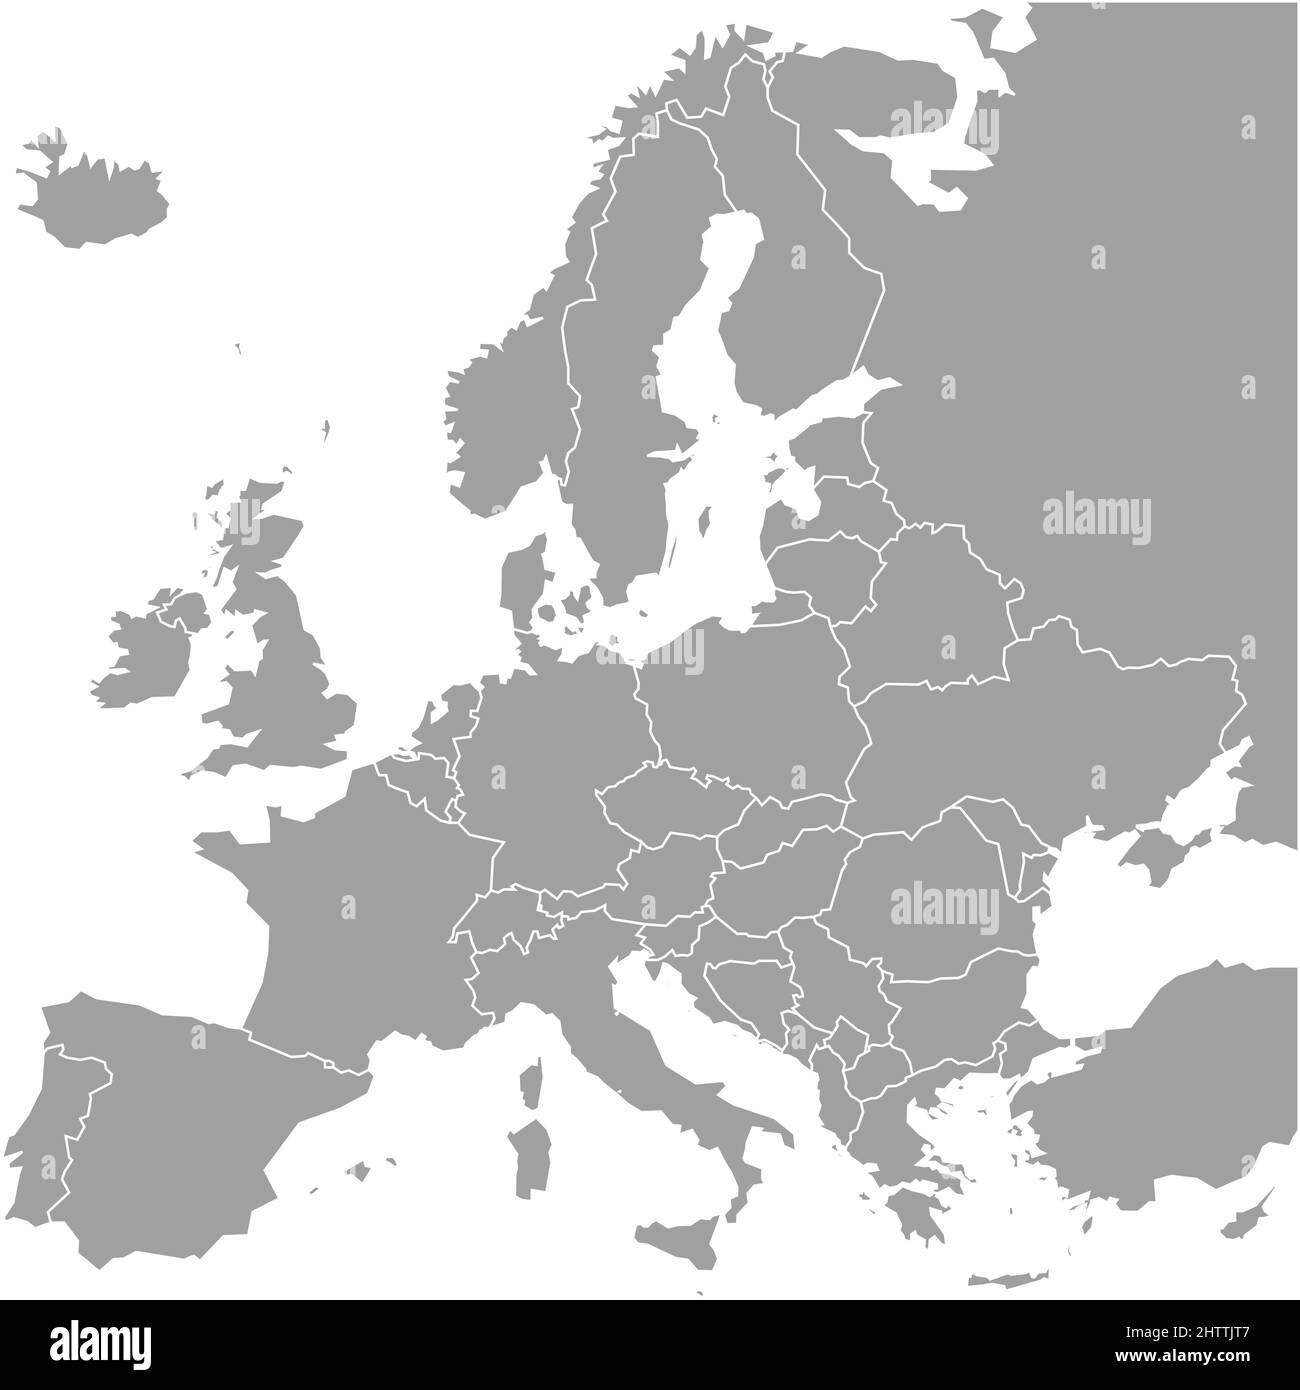 Carte vierge de l'Europe. Carte vectorielle simplifiée en gris avec bordures blanches sur fond blanc Illustration de Vecteur